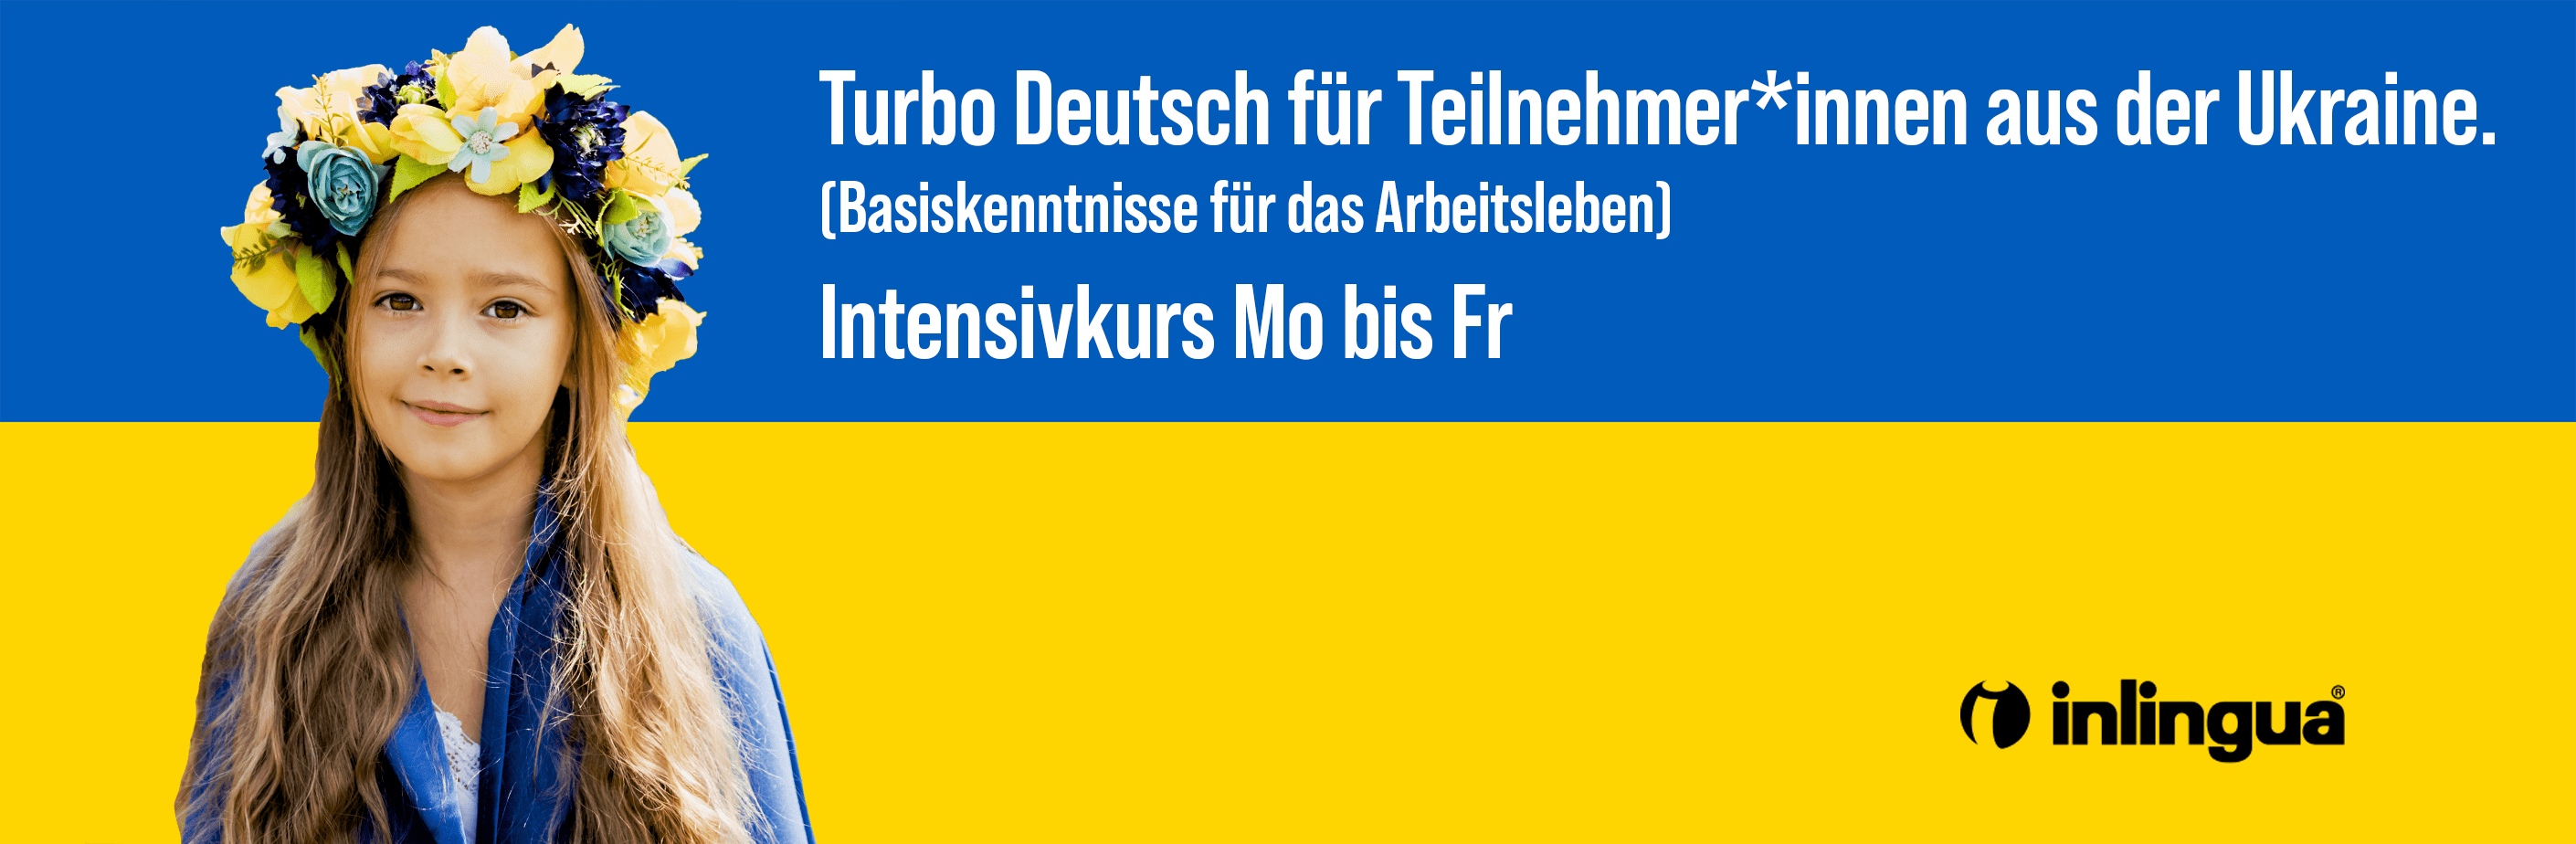 Ukraine Turbo Deutsch